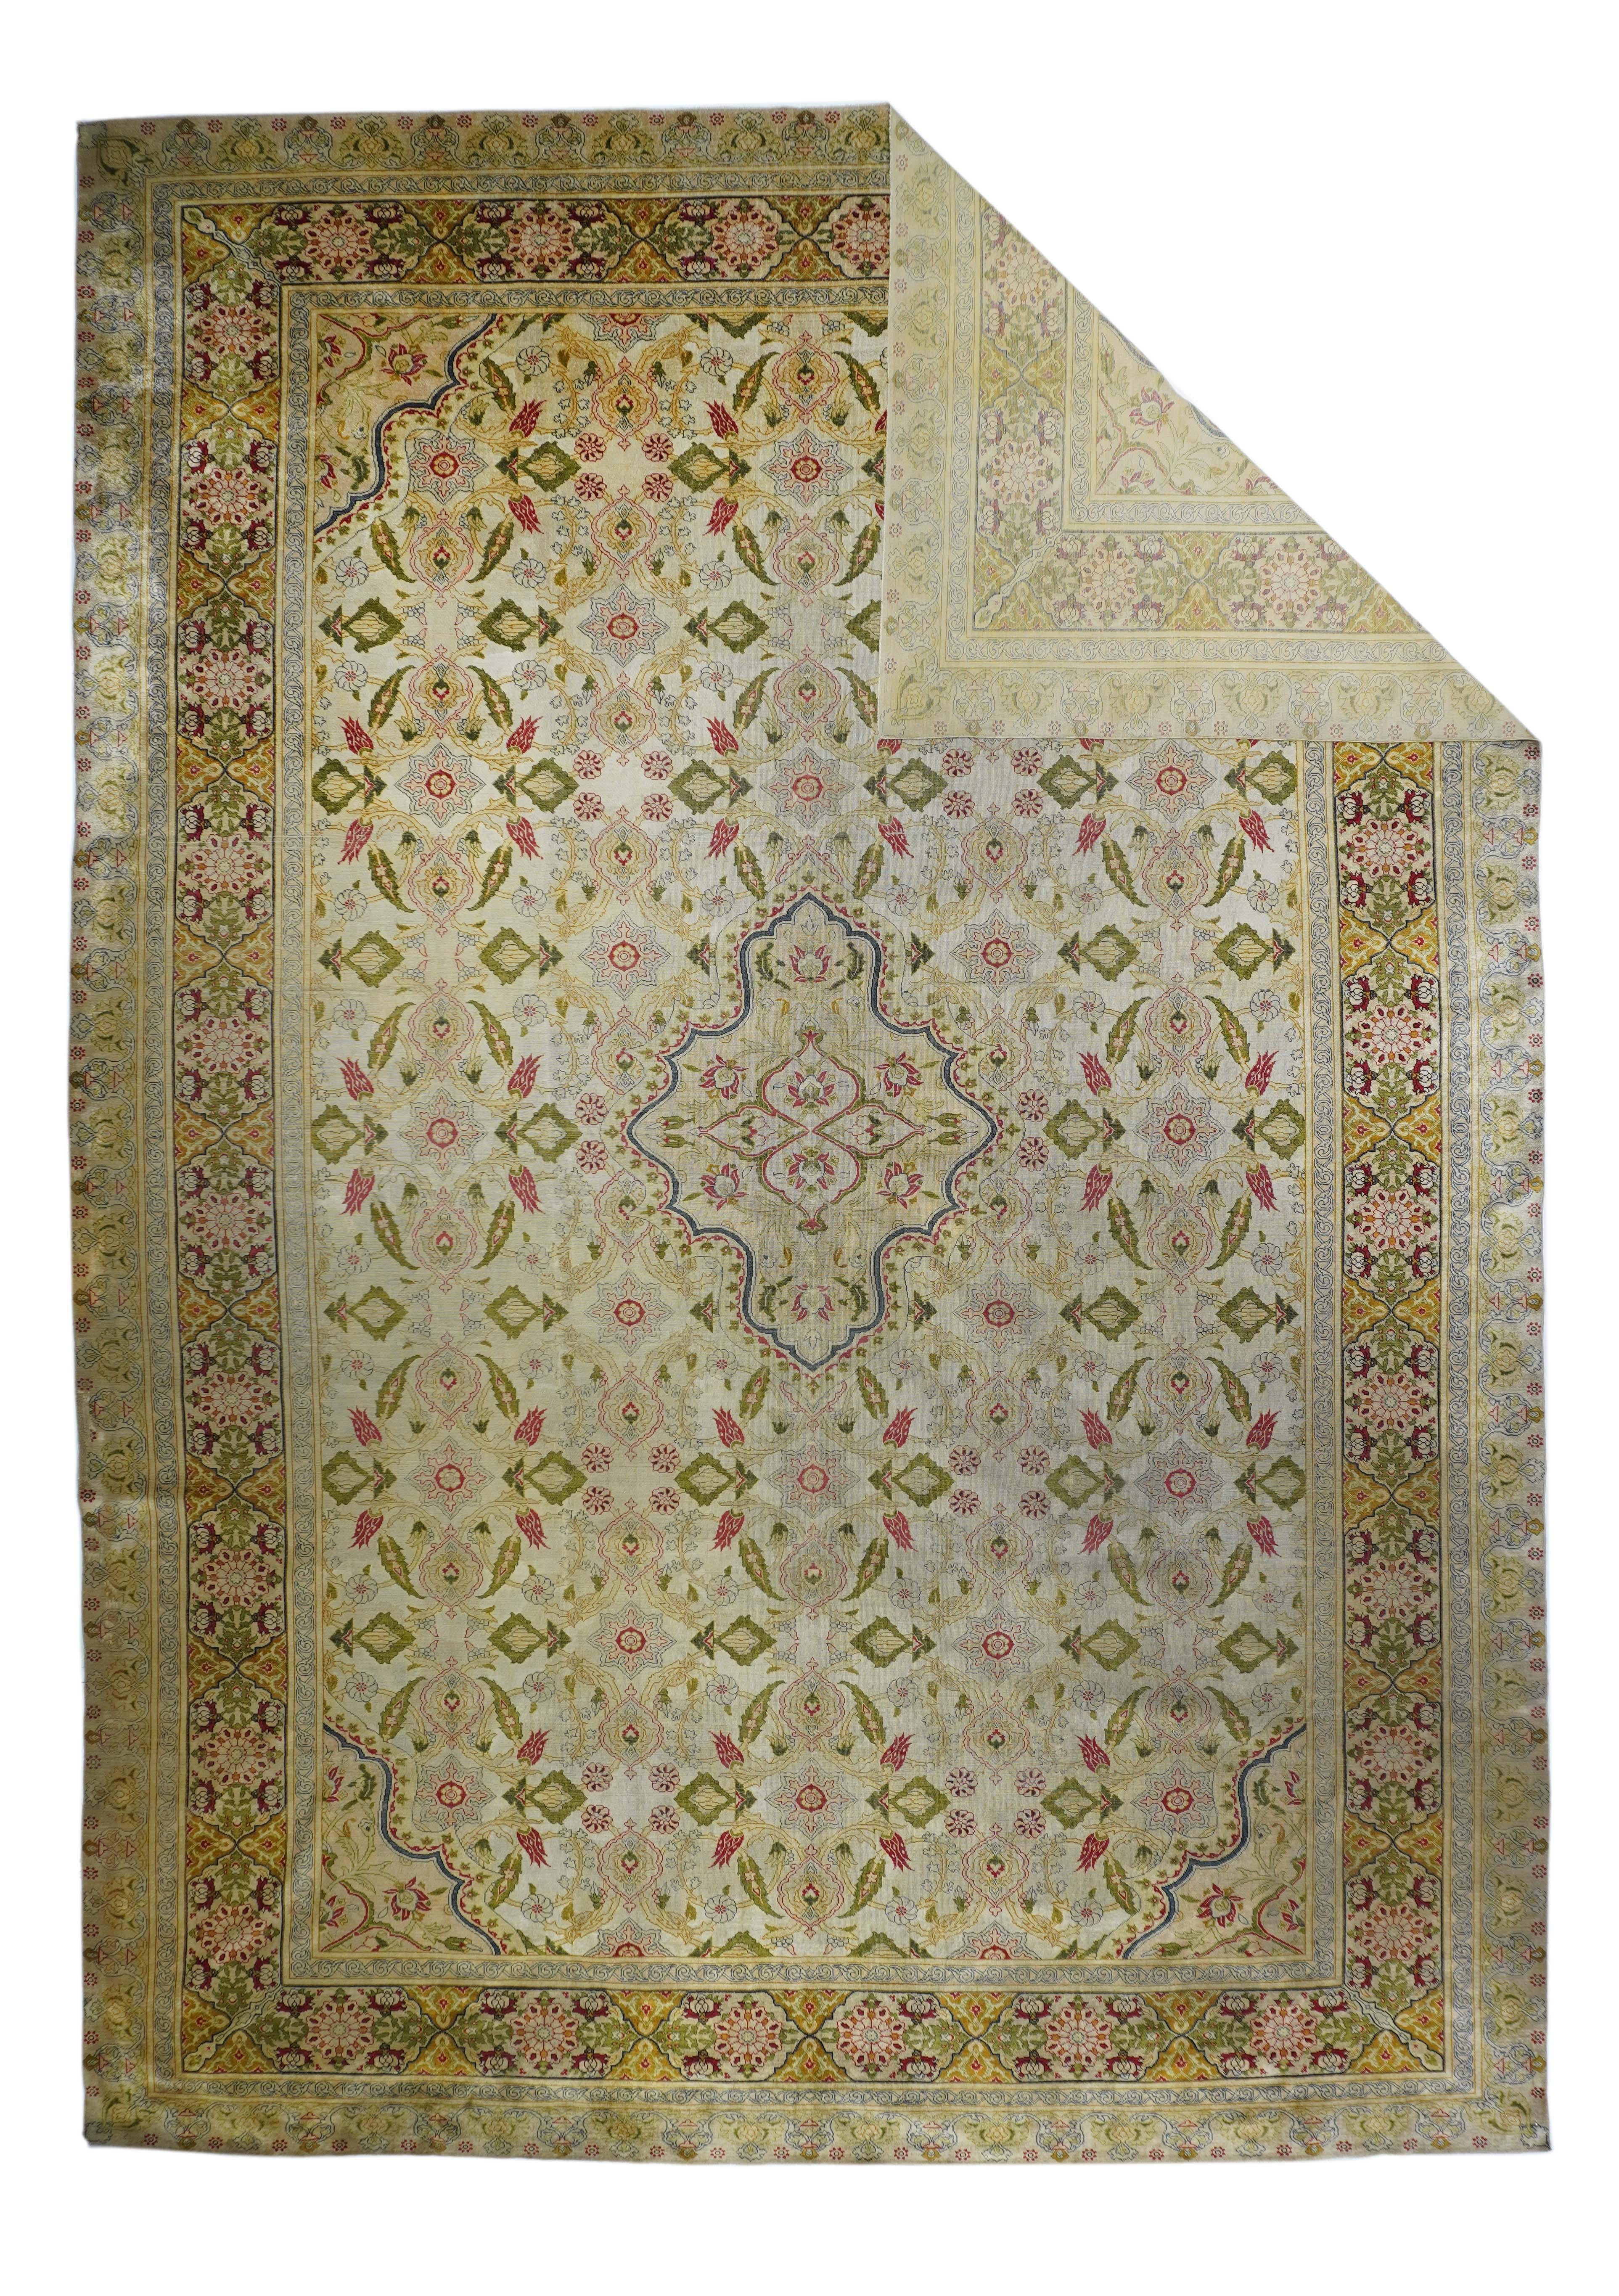 Antique Sivas rug measures: 9'10'' x 14'0''.